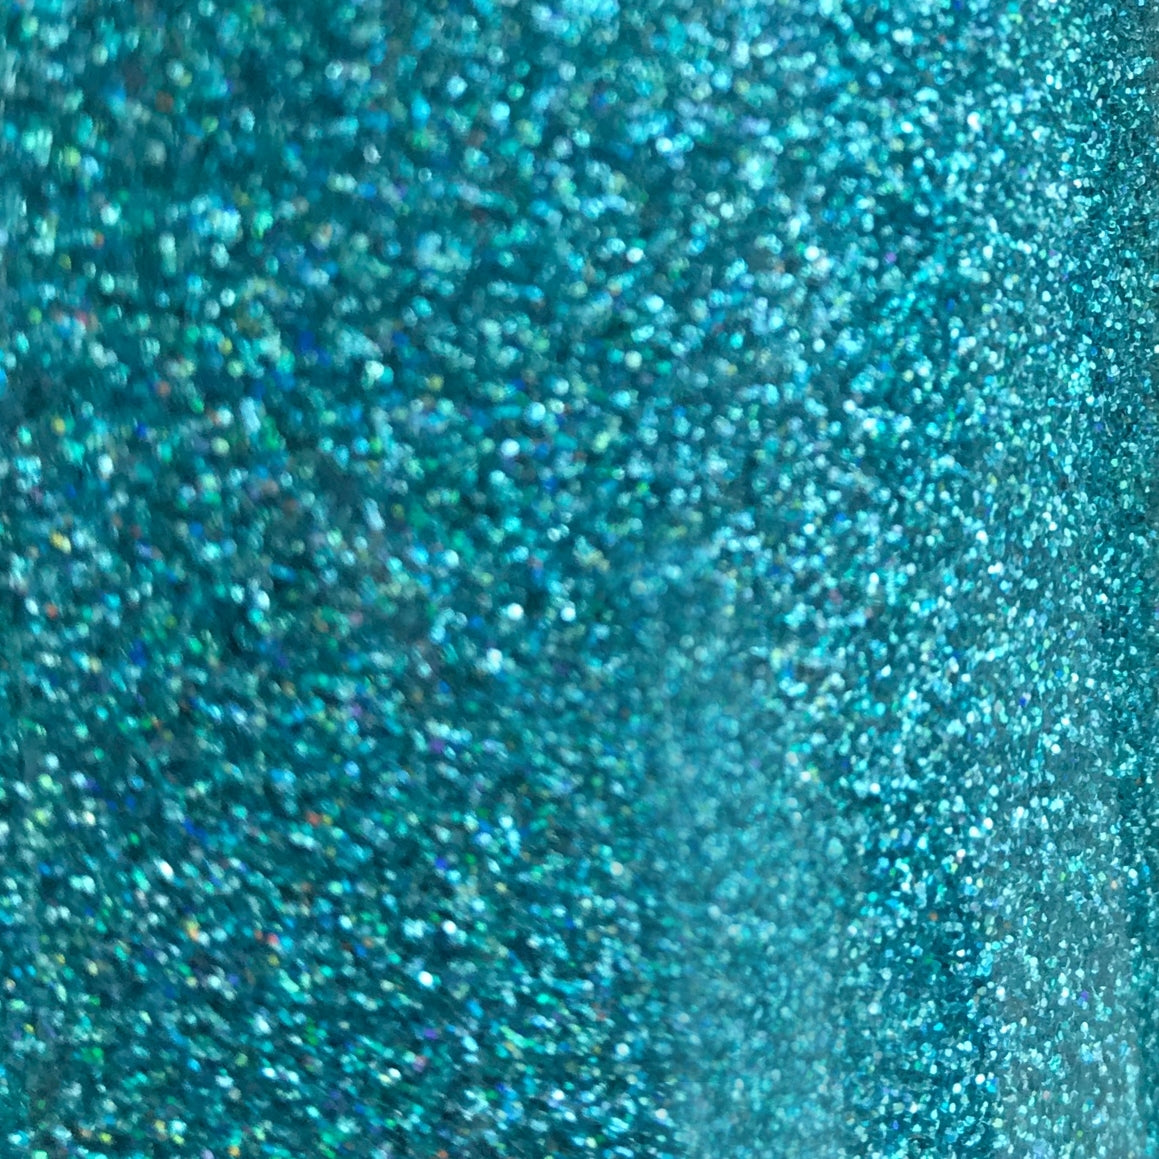 Siser Glitter HTV - Mermaid Blue